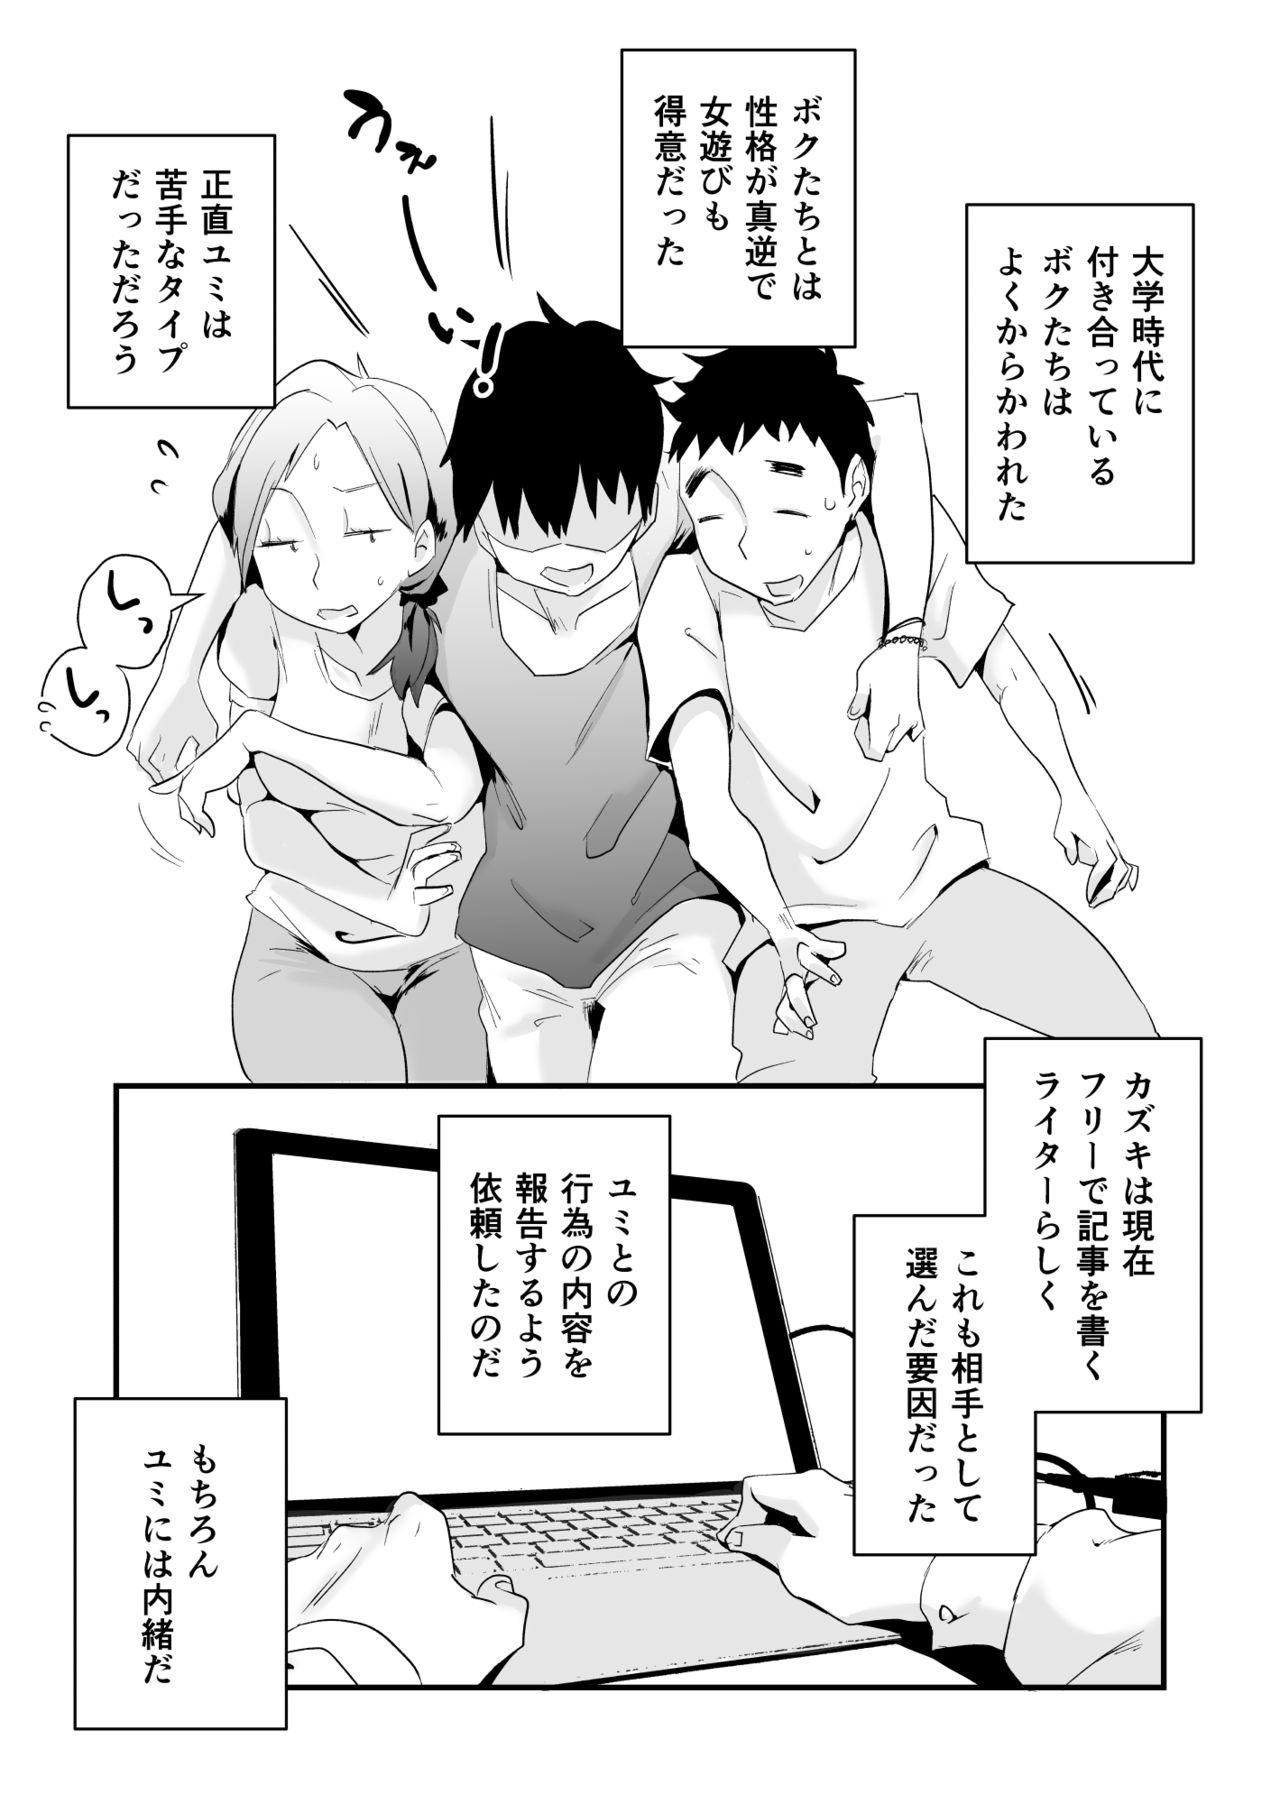 Gayfuck Anata no Nozomi vol. 1 Hunks - Page 10